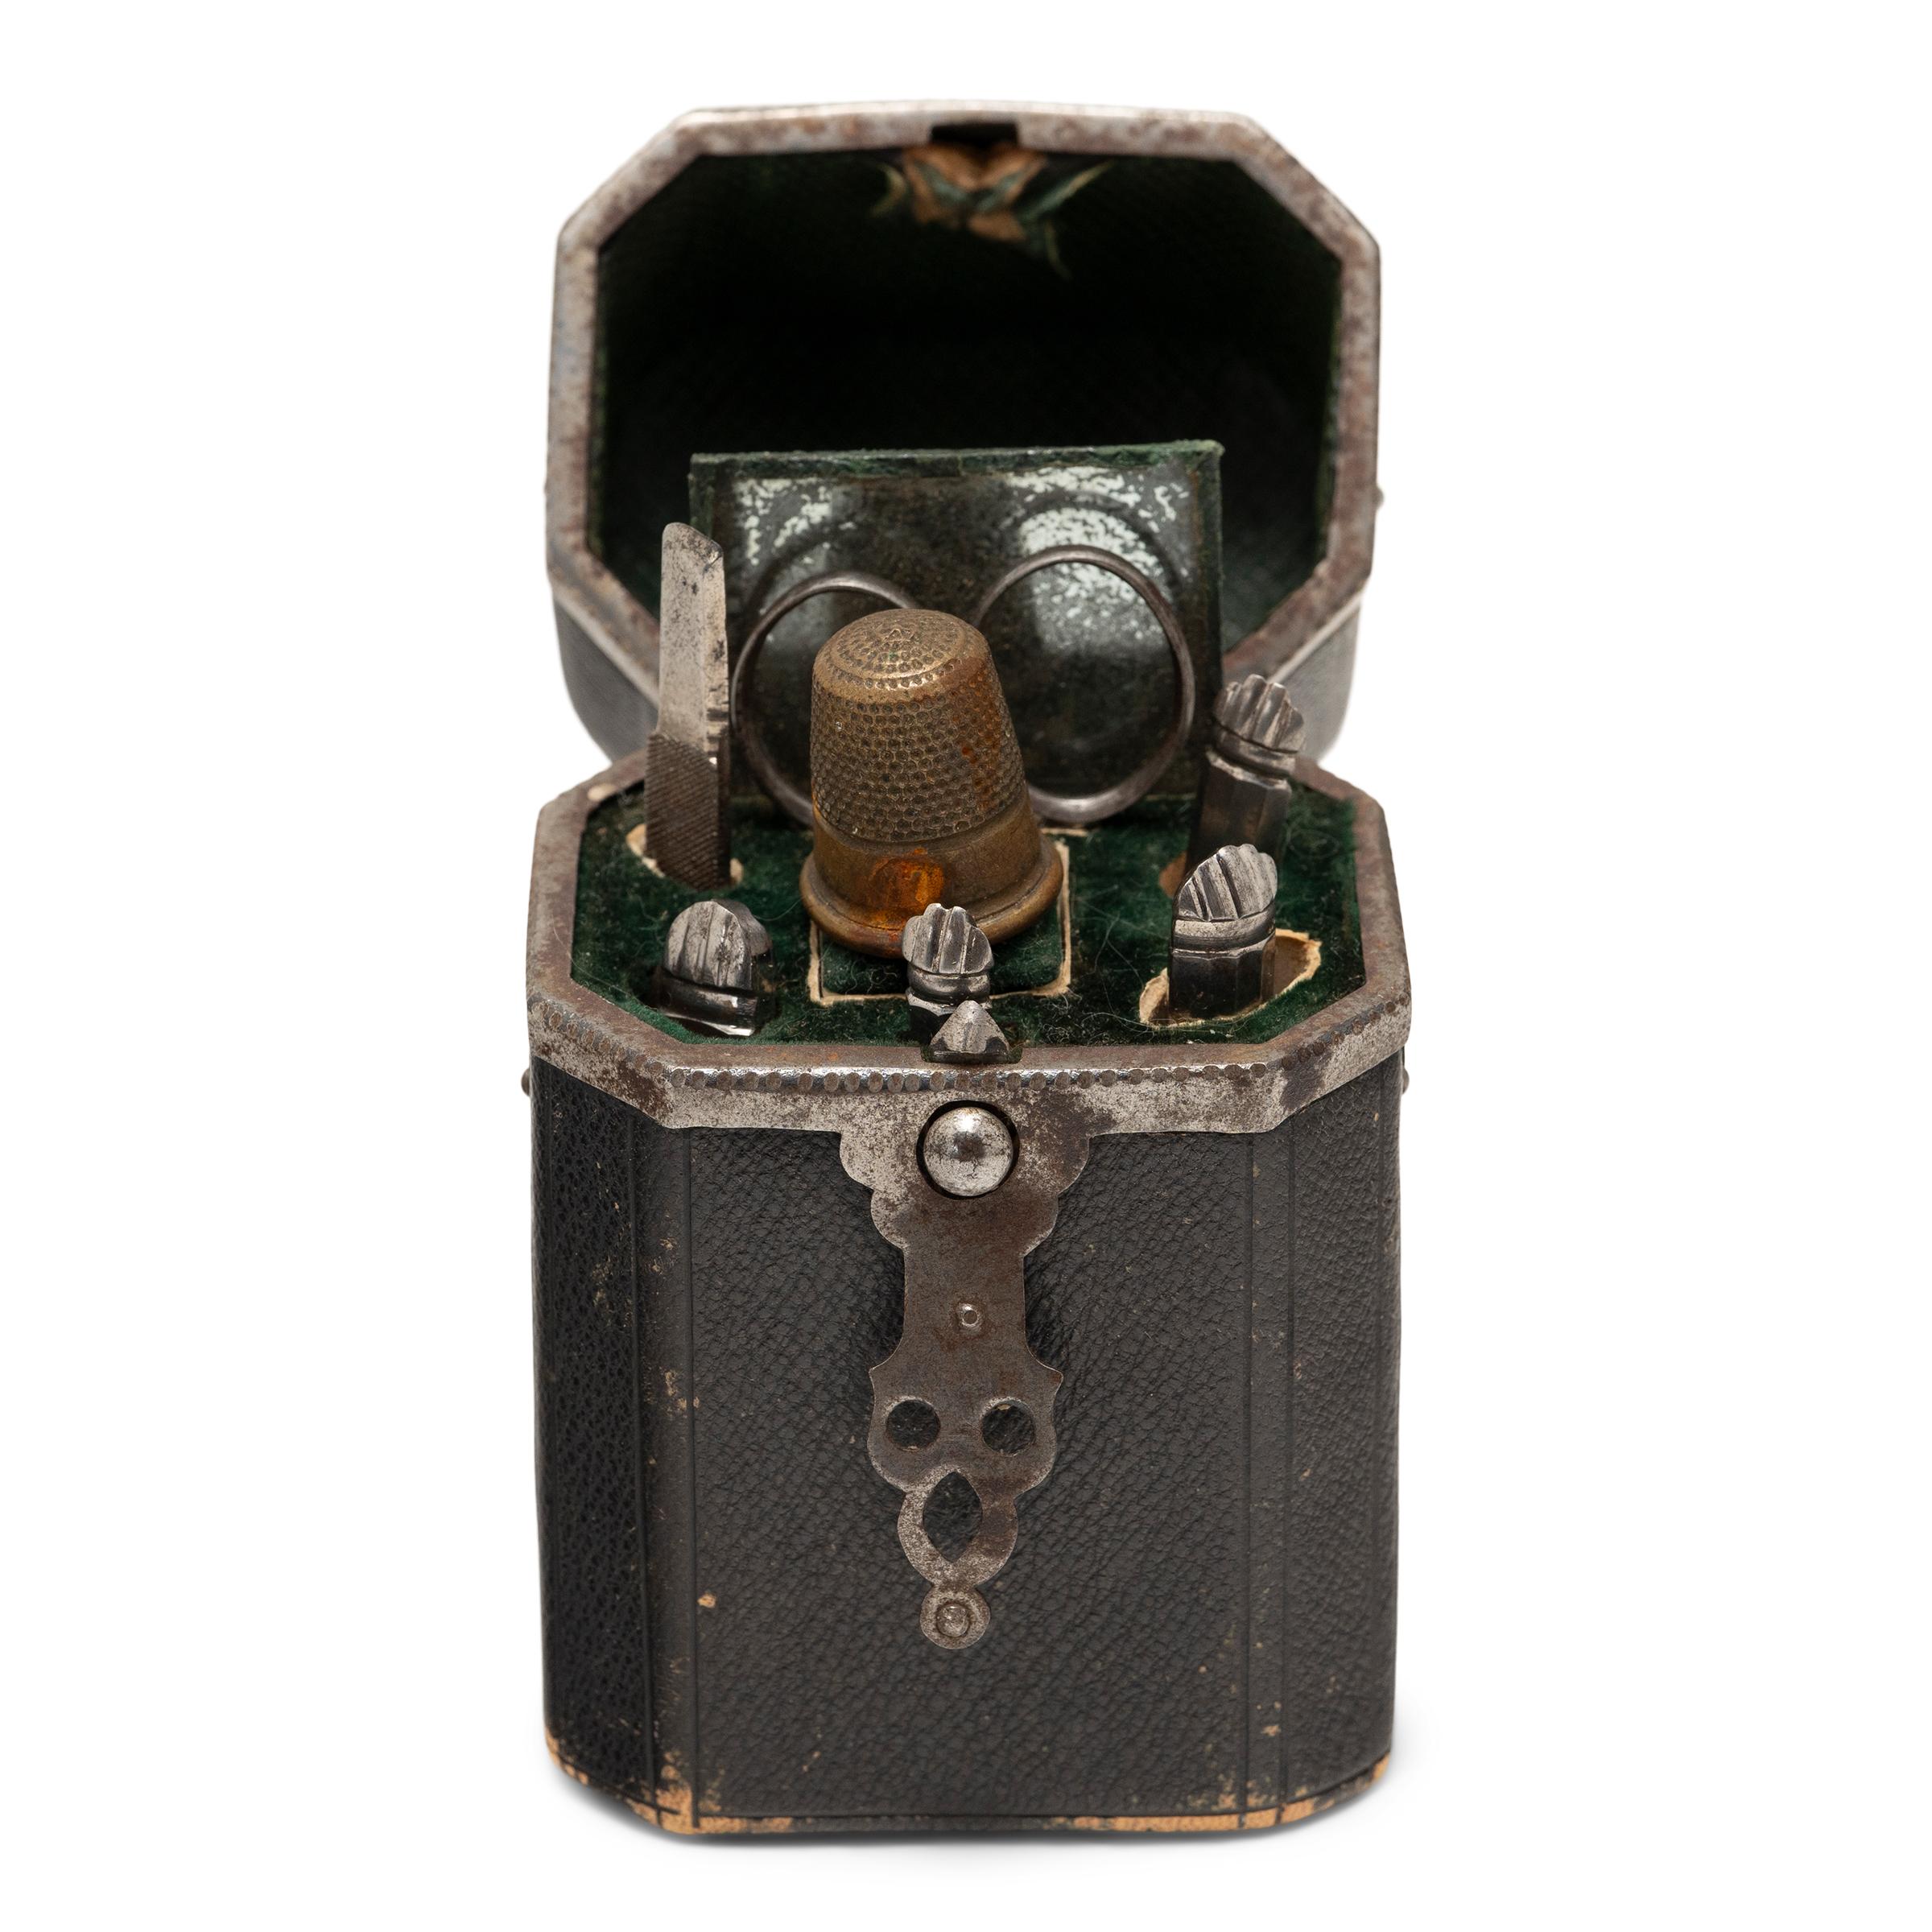 Cette charmante boîte antique datant de la fin du XIXe siècle est un kit de voyage de l'époque victorienne contenant des outils de couture et de toilettage, également connu sous le nom d'etui ou de nécessaire. La valise de voyage compacte est